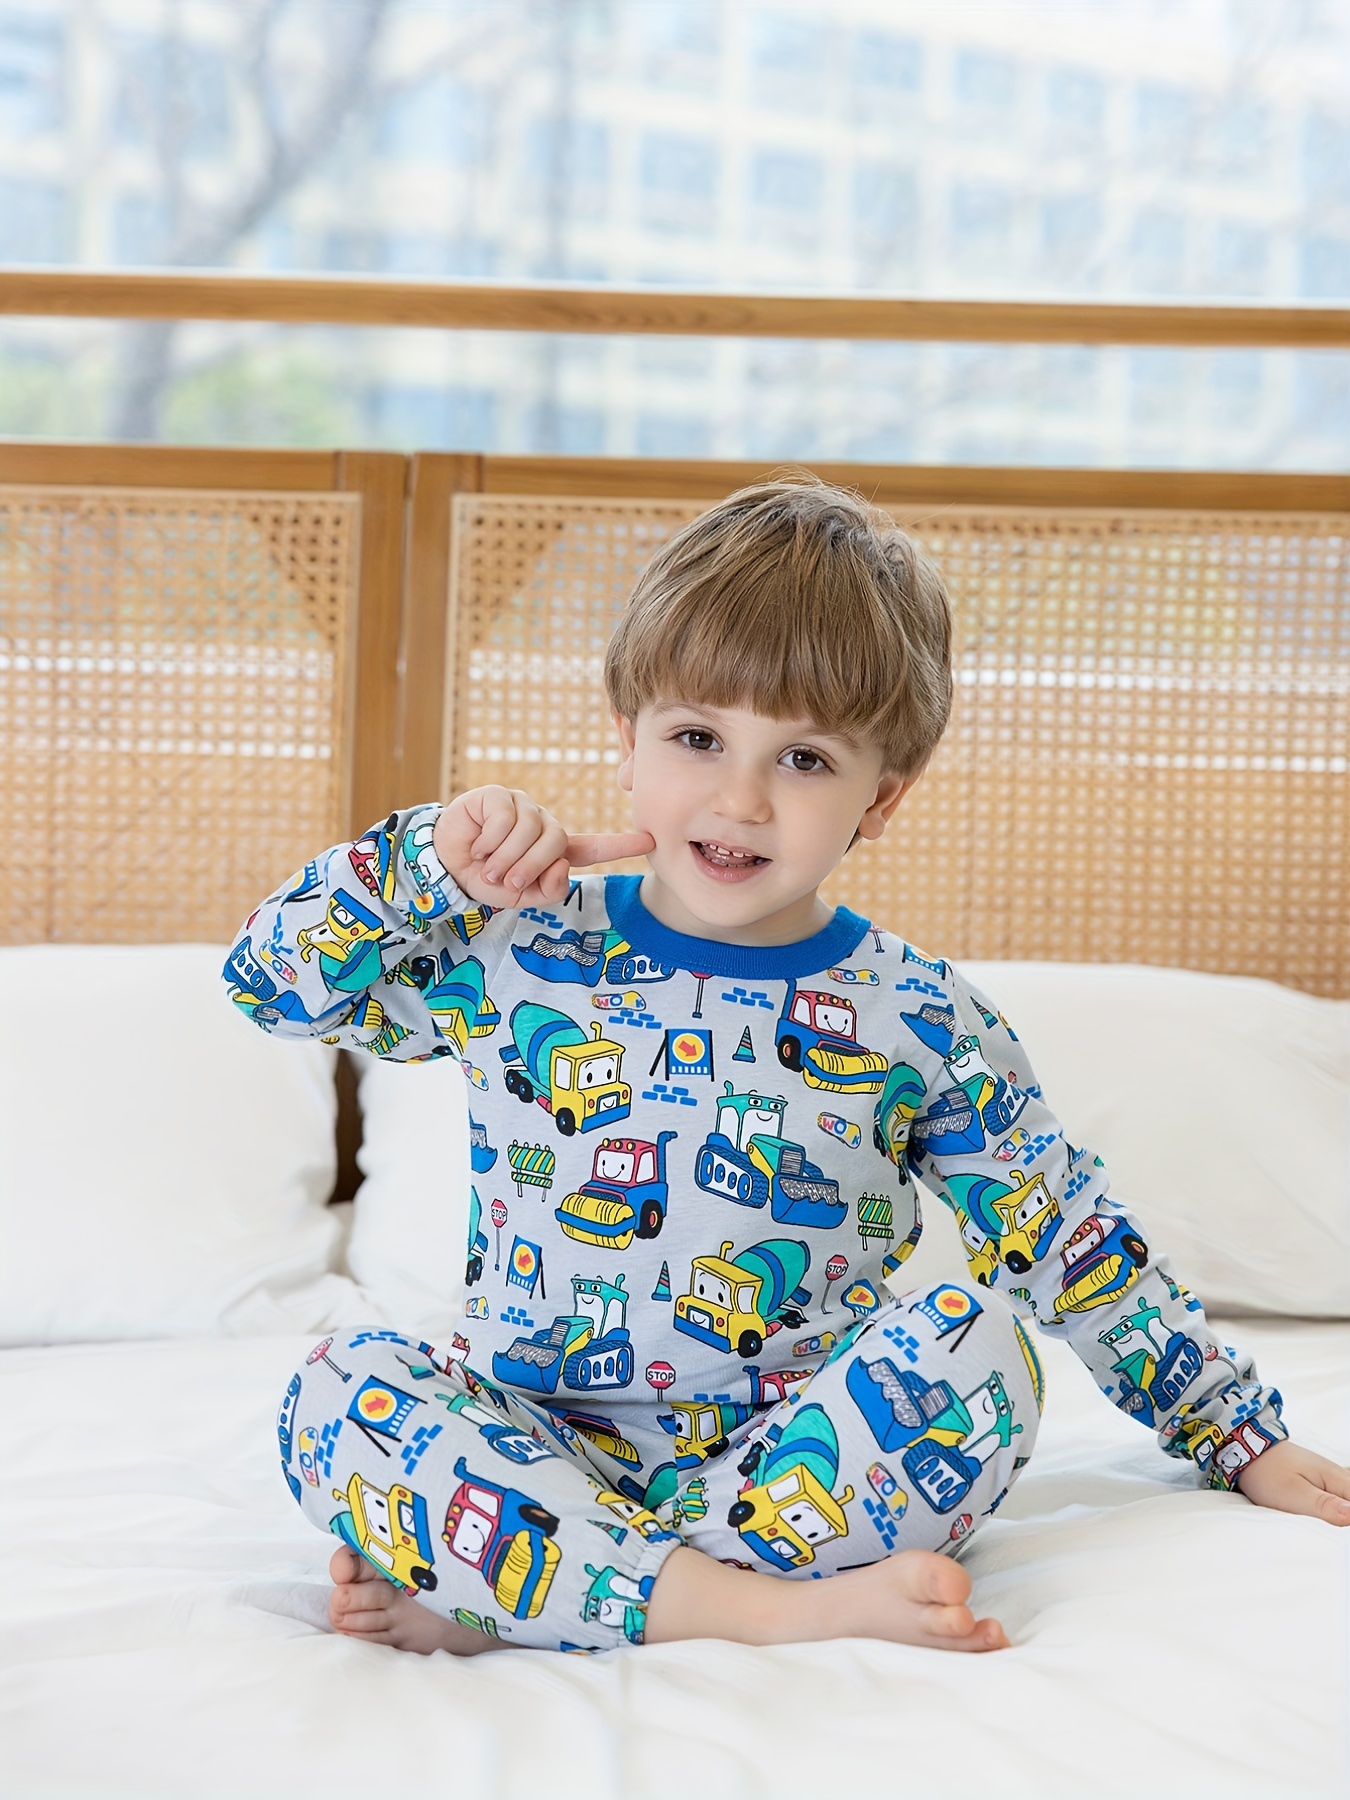 Pijama Alpina Térmico Polar en gris con puños  Ropa deportiva para hombre,  Ropa de dormir para hombre, Ropa de hombre